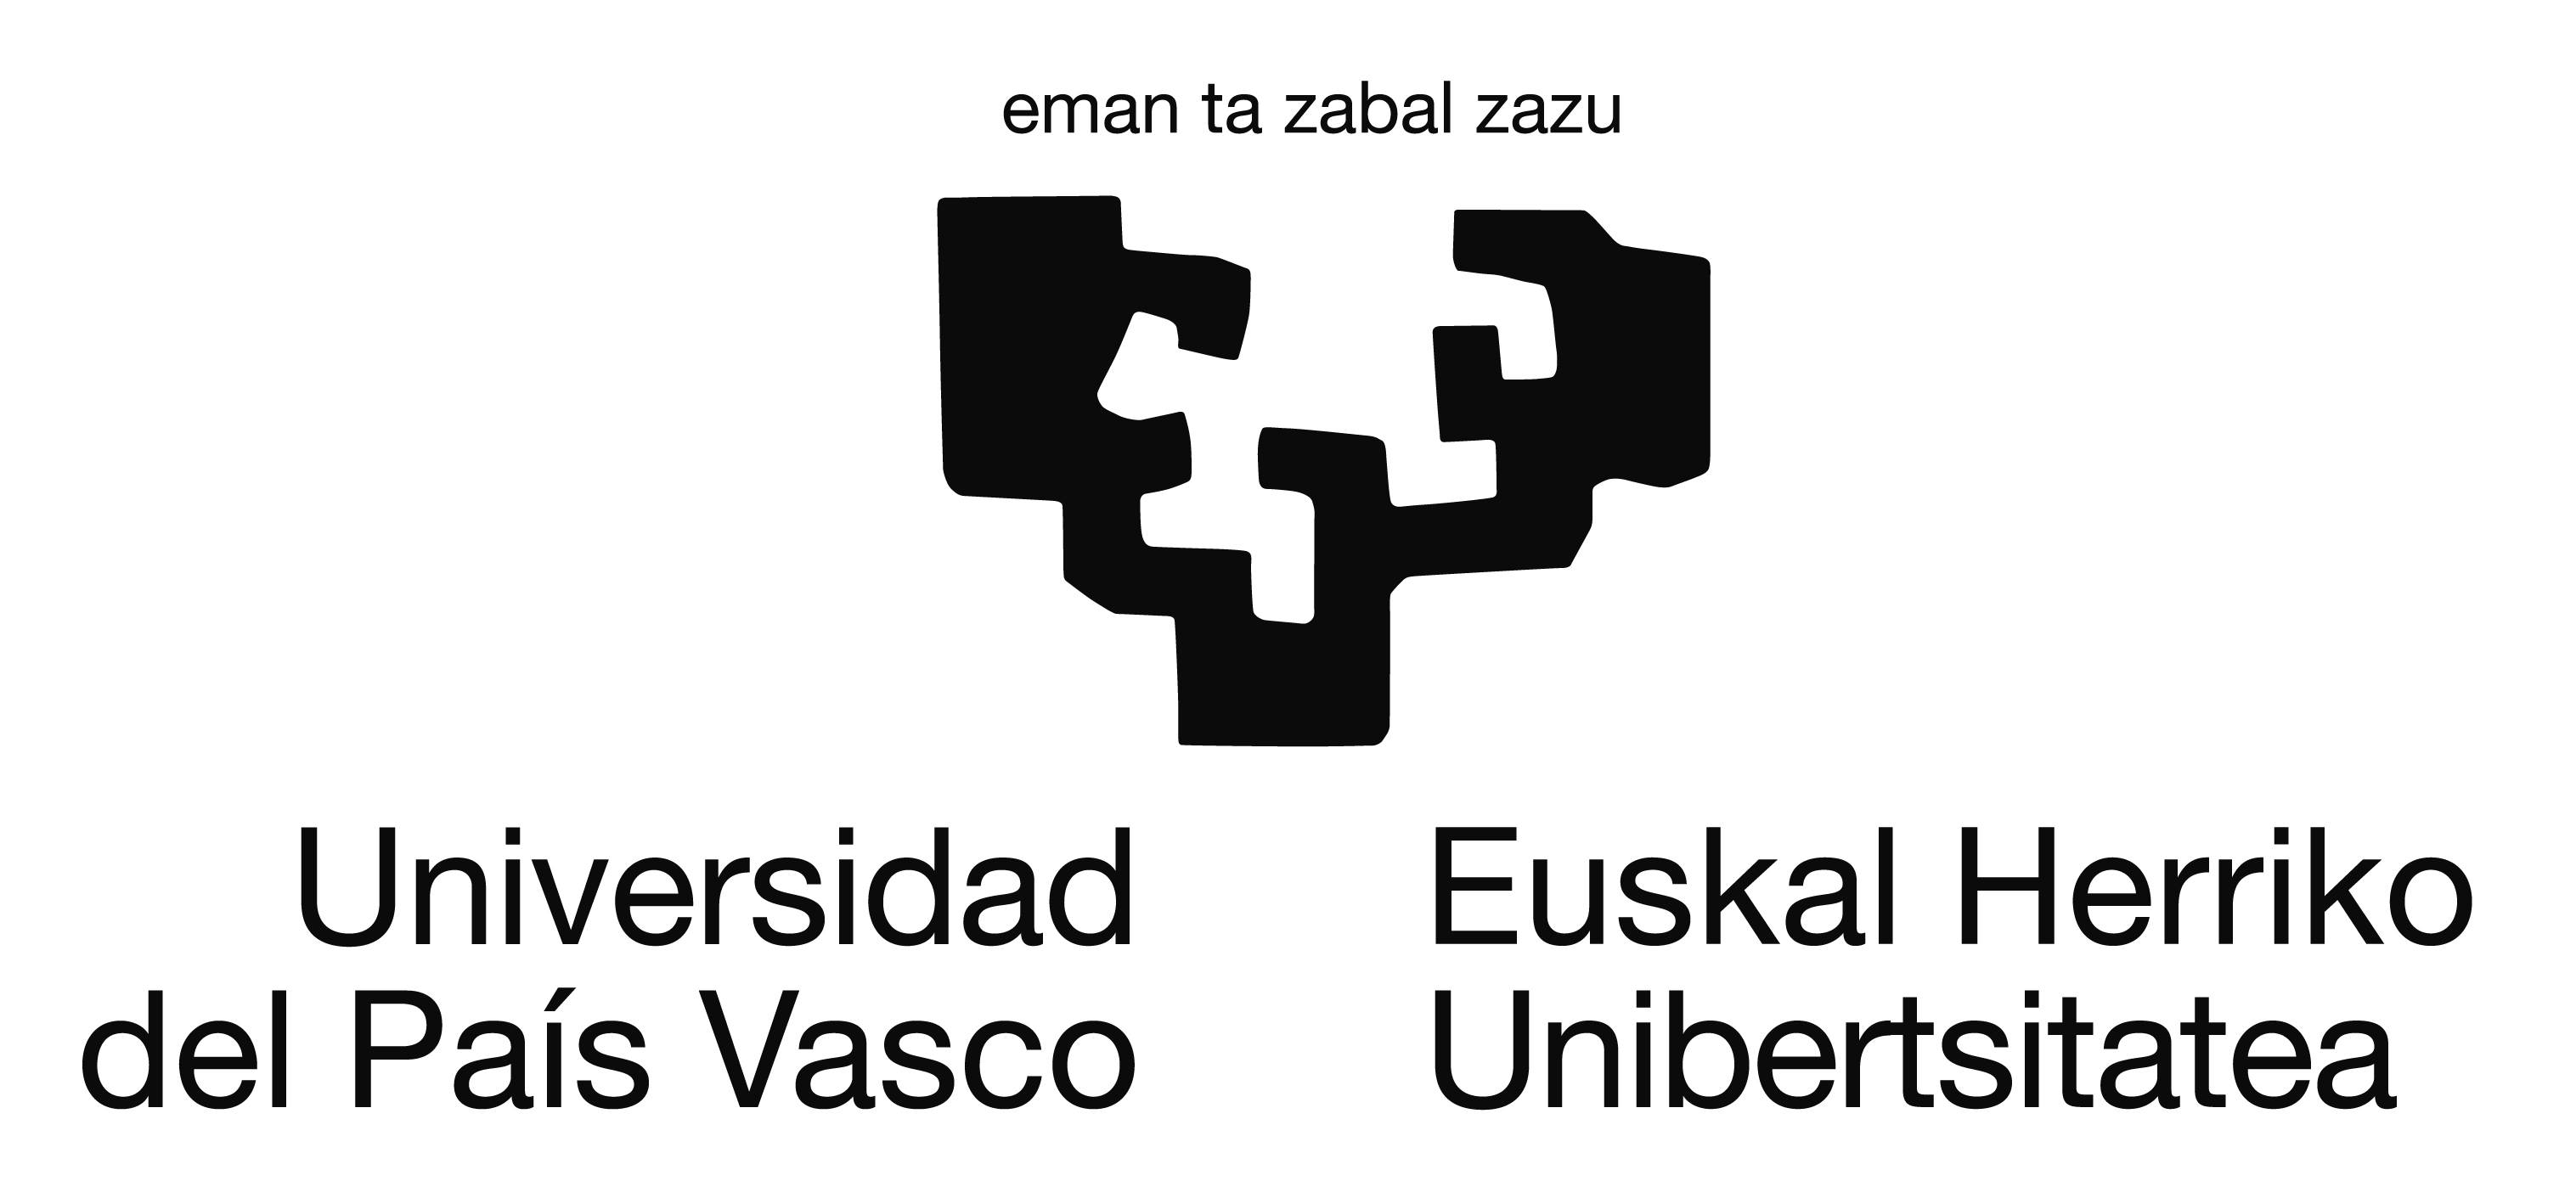 La Universidad del País Vasco / Euskal Herriko Unibertsitatea (UPV/EHU) - España